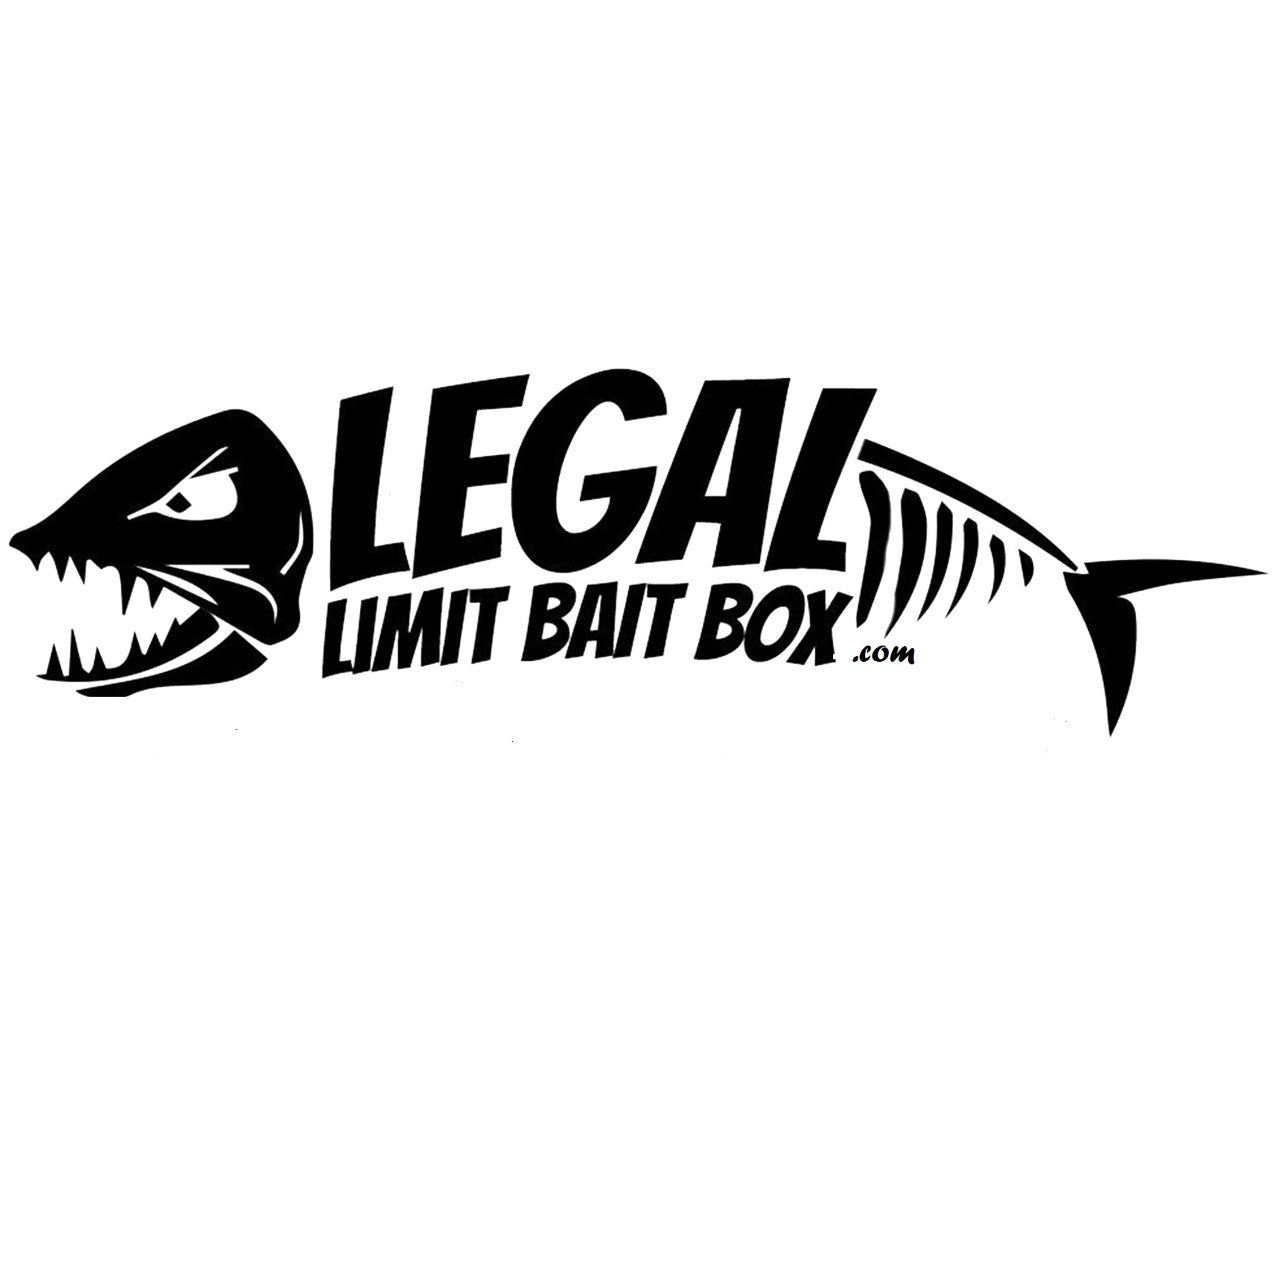 Legal Limit Bait Box